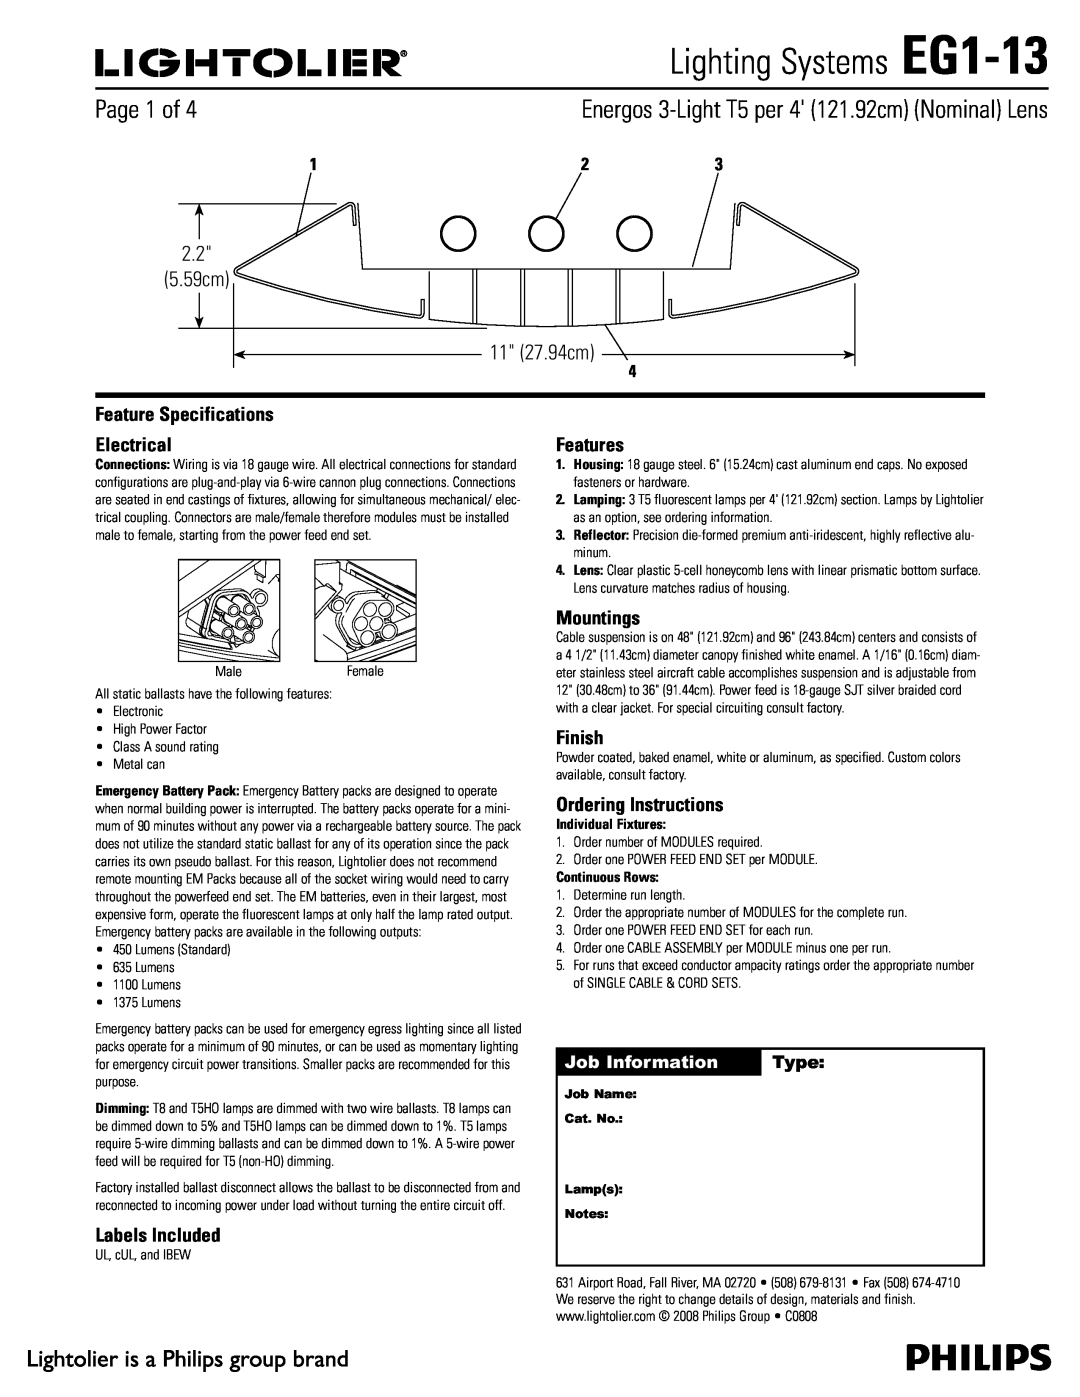 Lightolier specifications Lighting Systems EG1-13,  Dn  Dn, Job Information, Type 